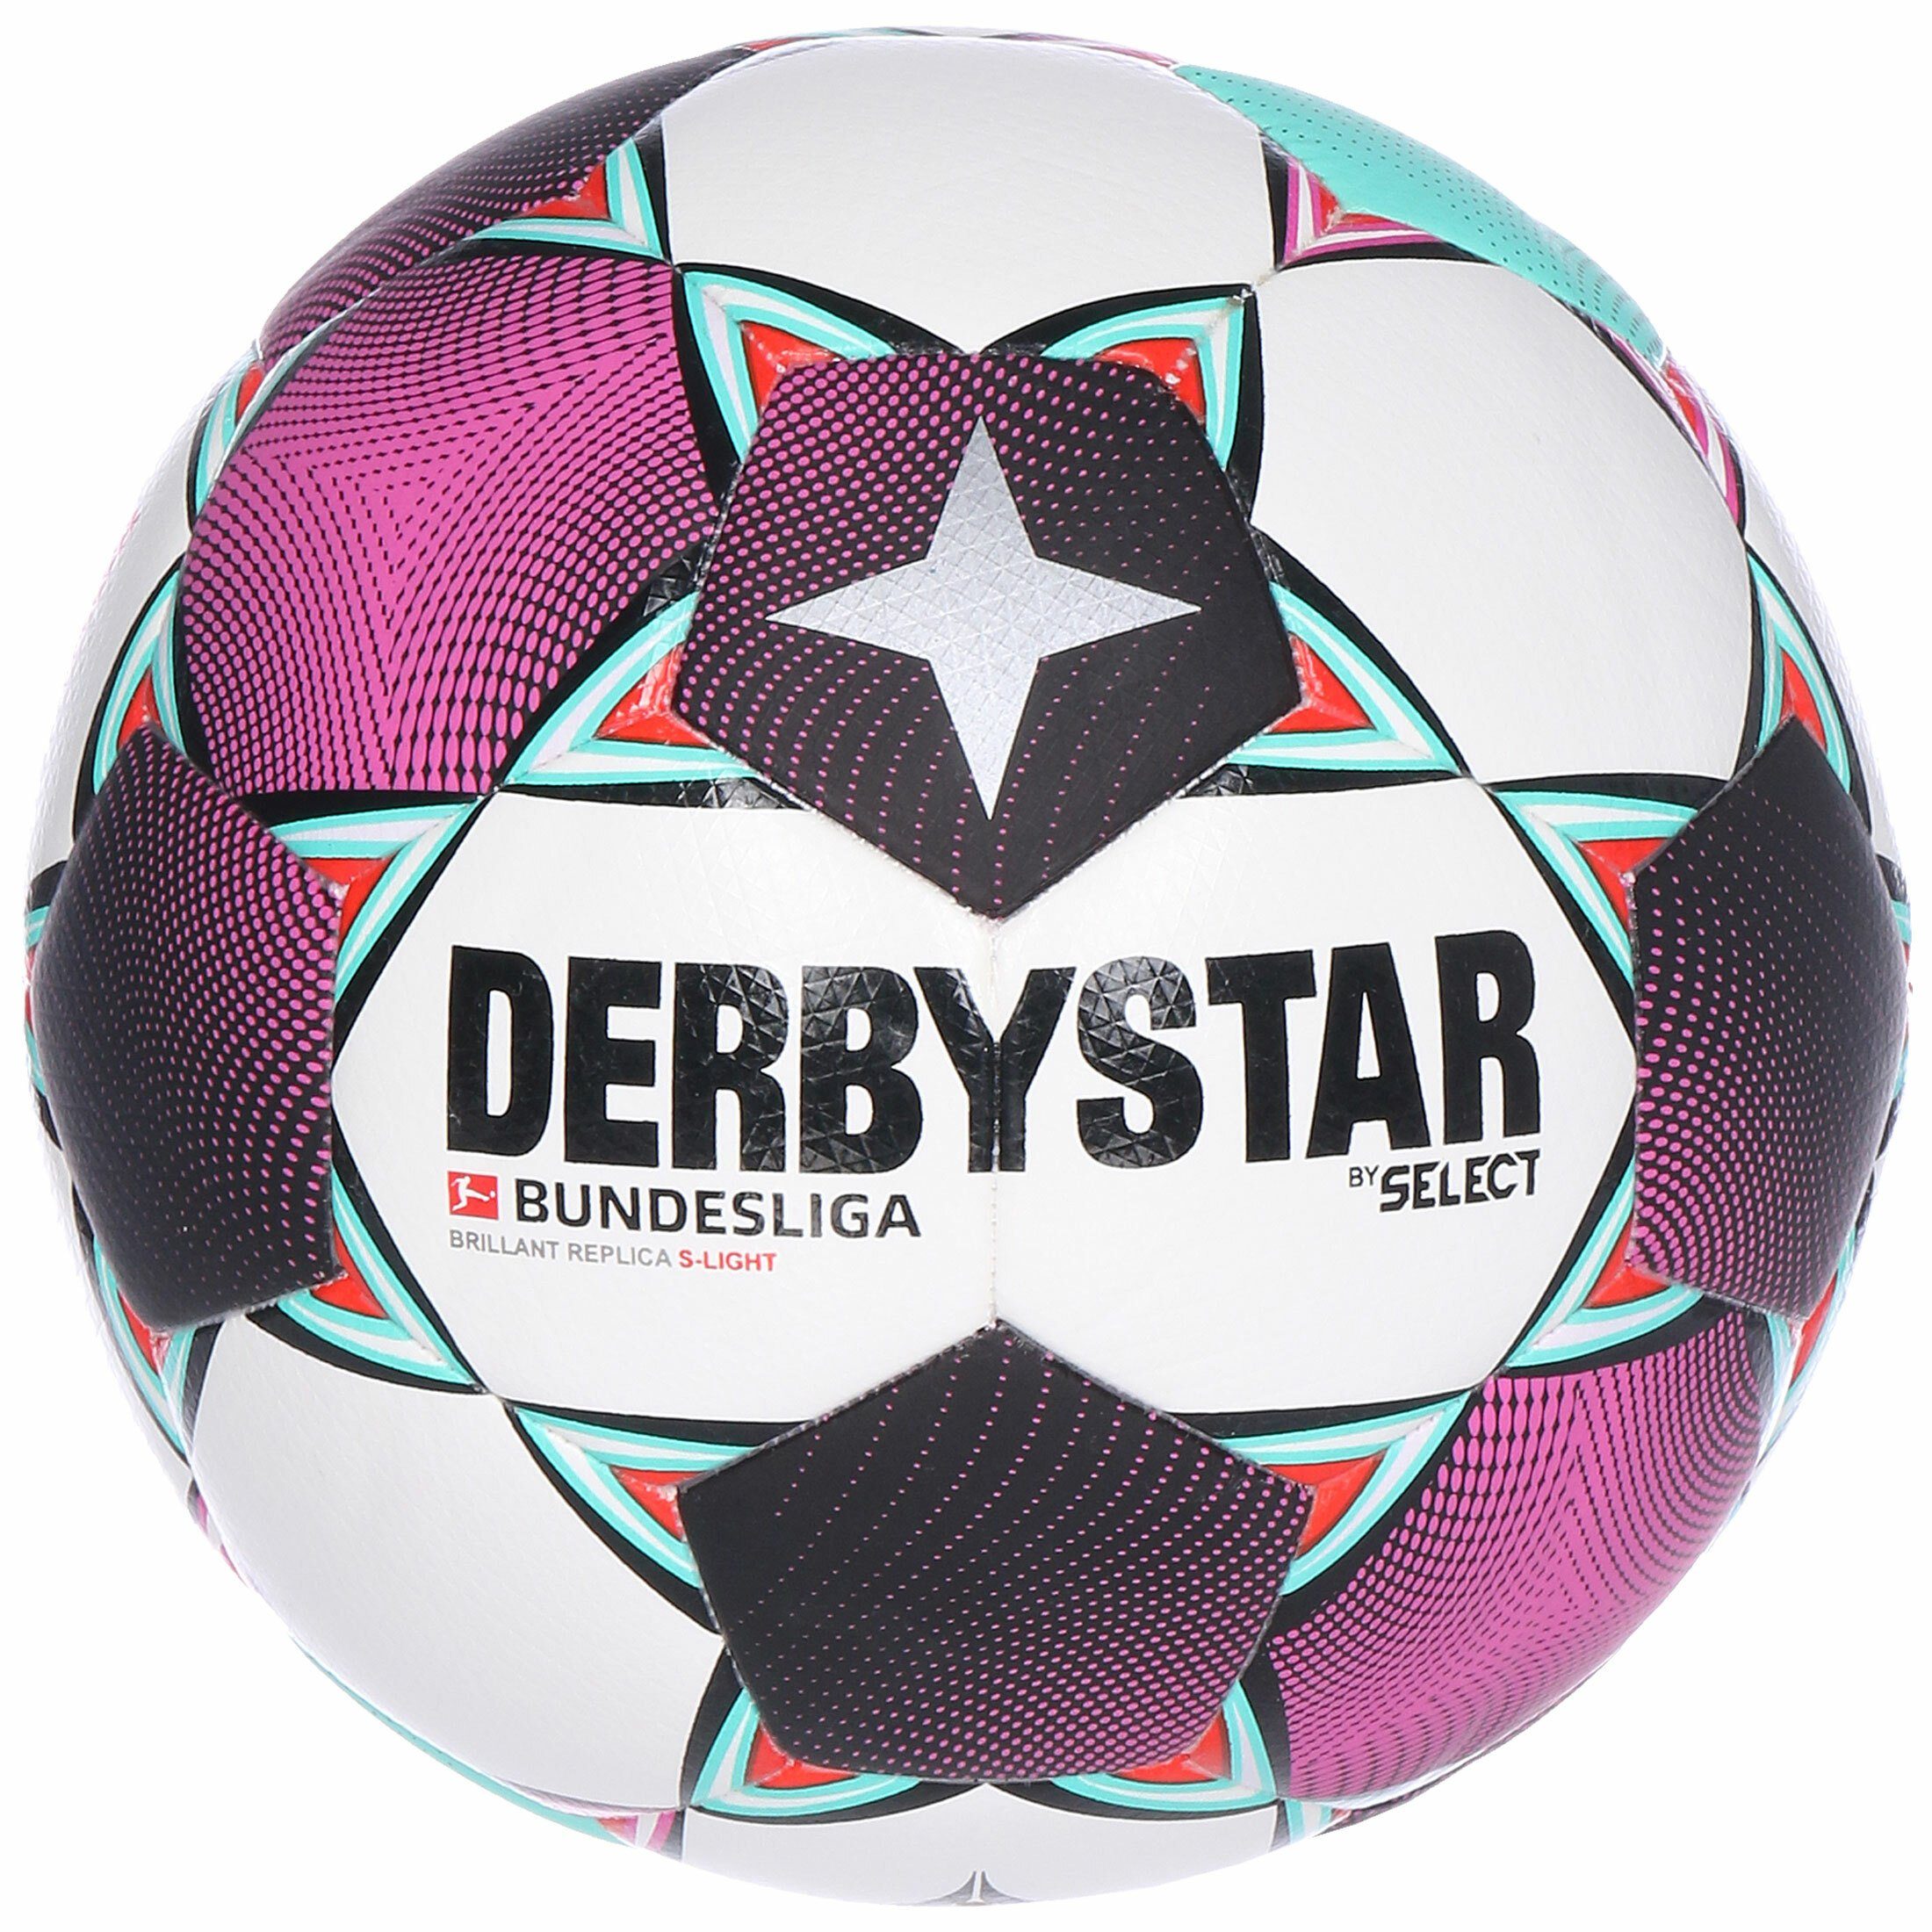 Derbystar Fußball »Bundesliga Brillant Replica S-Light Fußball«